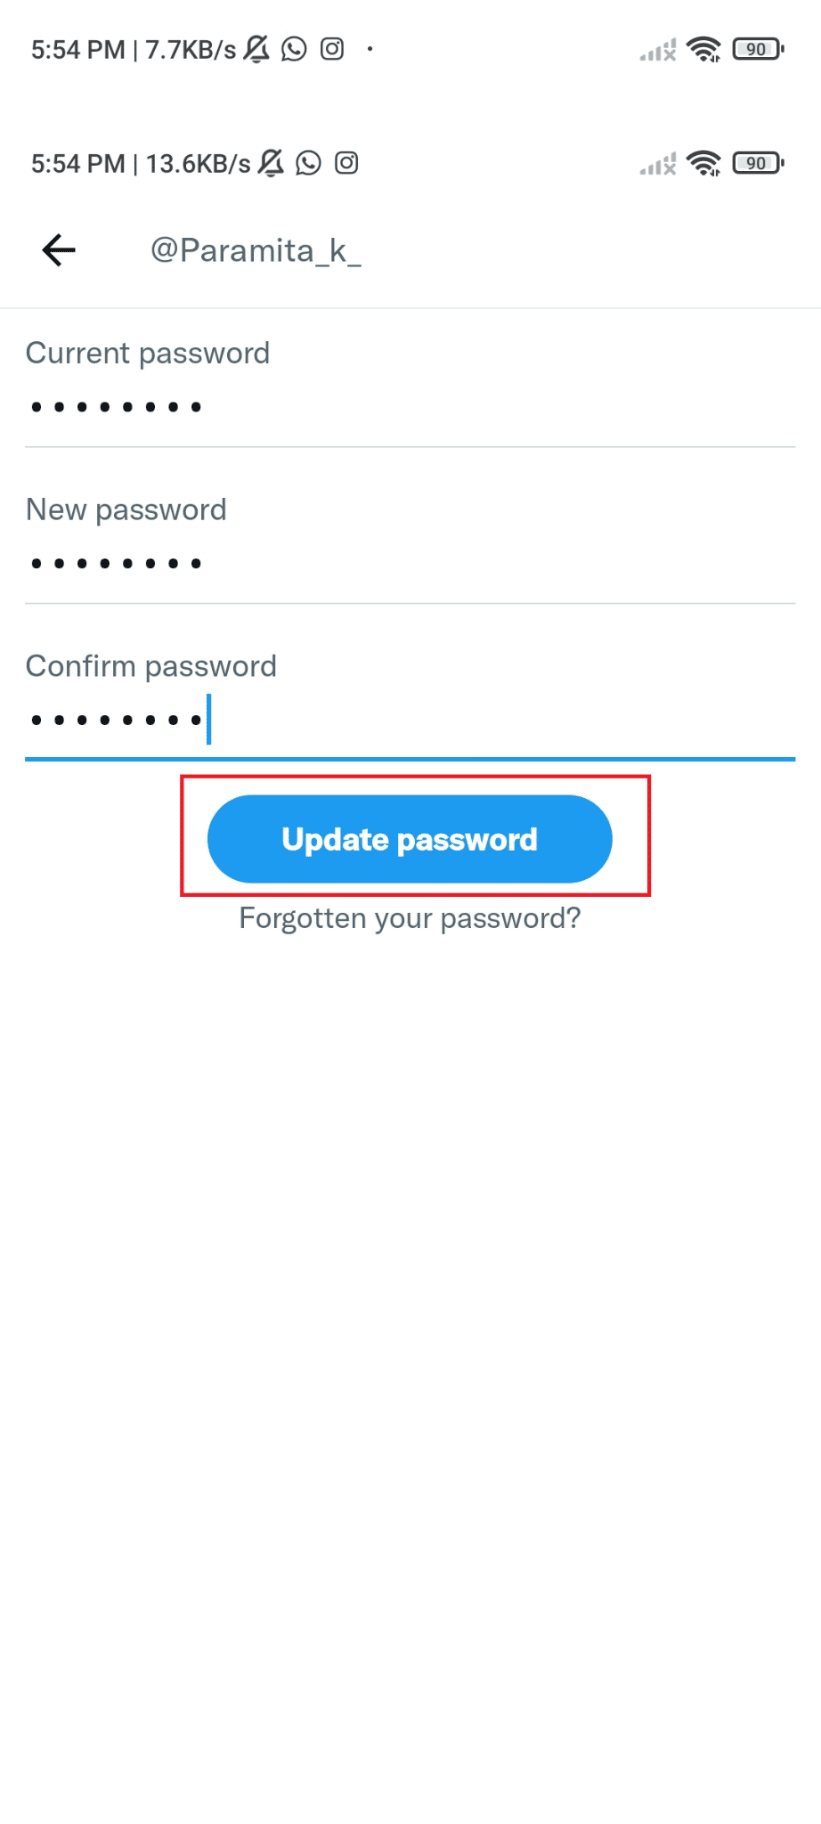 Нажмите «Обновить пароль», и все готово. Как удалить заблокированную учетную запись Twitter